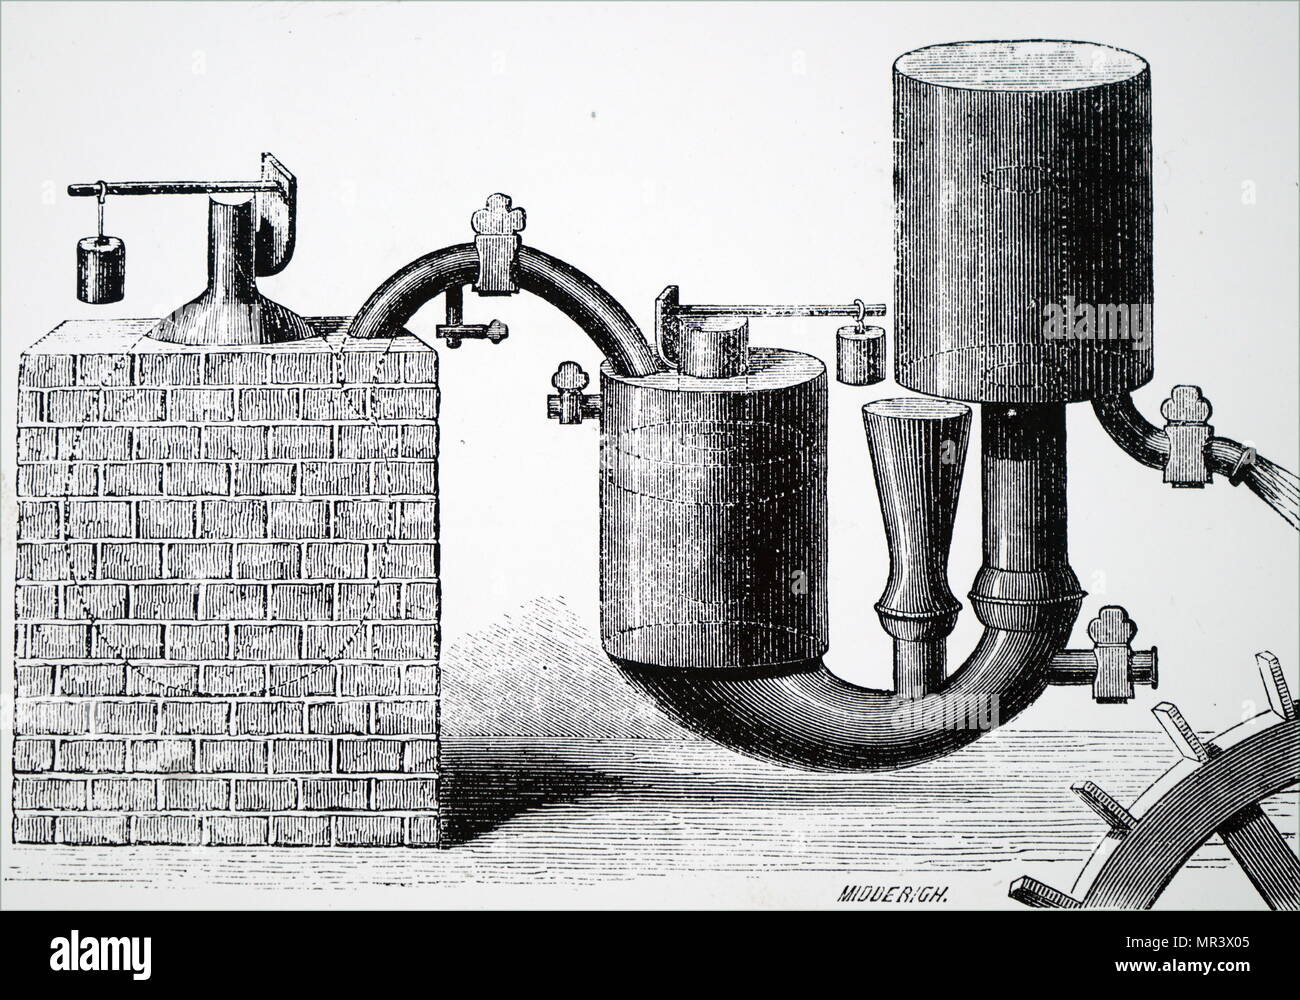 Ilustración mostrando Papin's Steam Engine (1707) para bombear agua de las minas. Fue el primer motor para utilizar la válvula de seguridad que él había inventado 27 años antes de su "igester'. (1647-1713), un físico francés, matemático e inventor, mejor conocido por su invención innovadora del vapor digester, el precursor de la olla a presión y de la locomotora de vapor. Fecha del siglo XIX Foto de stock